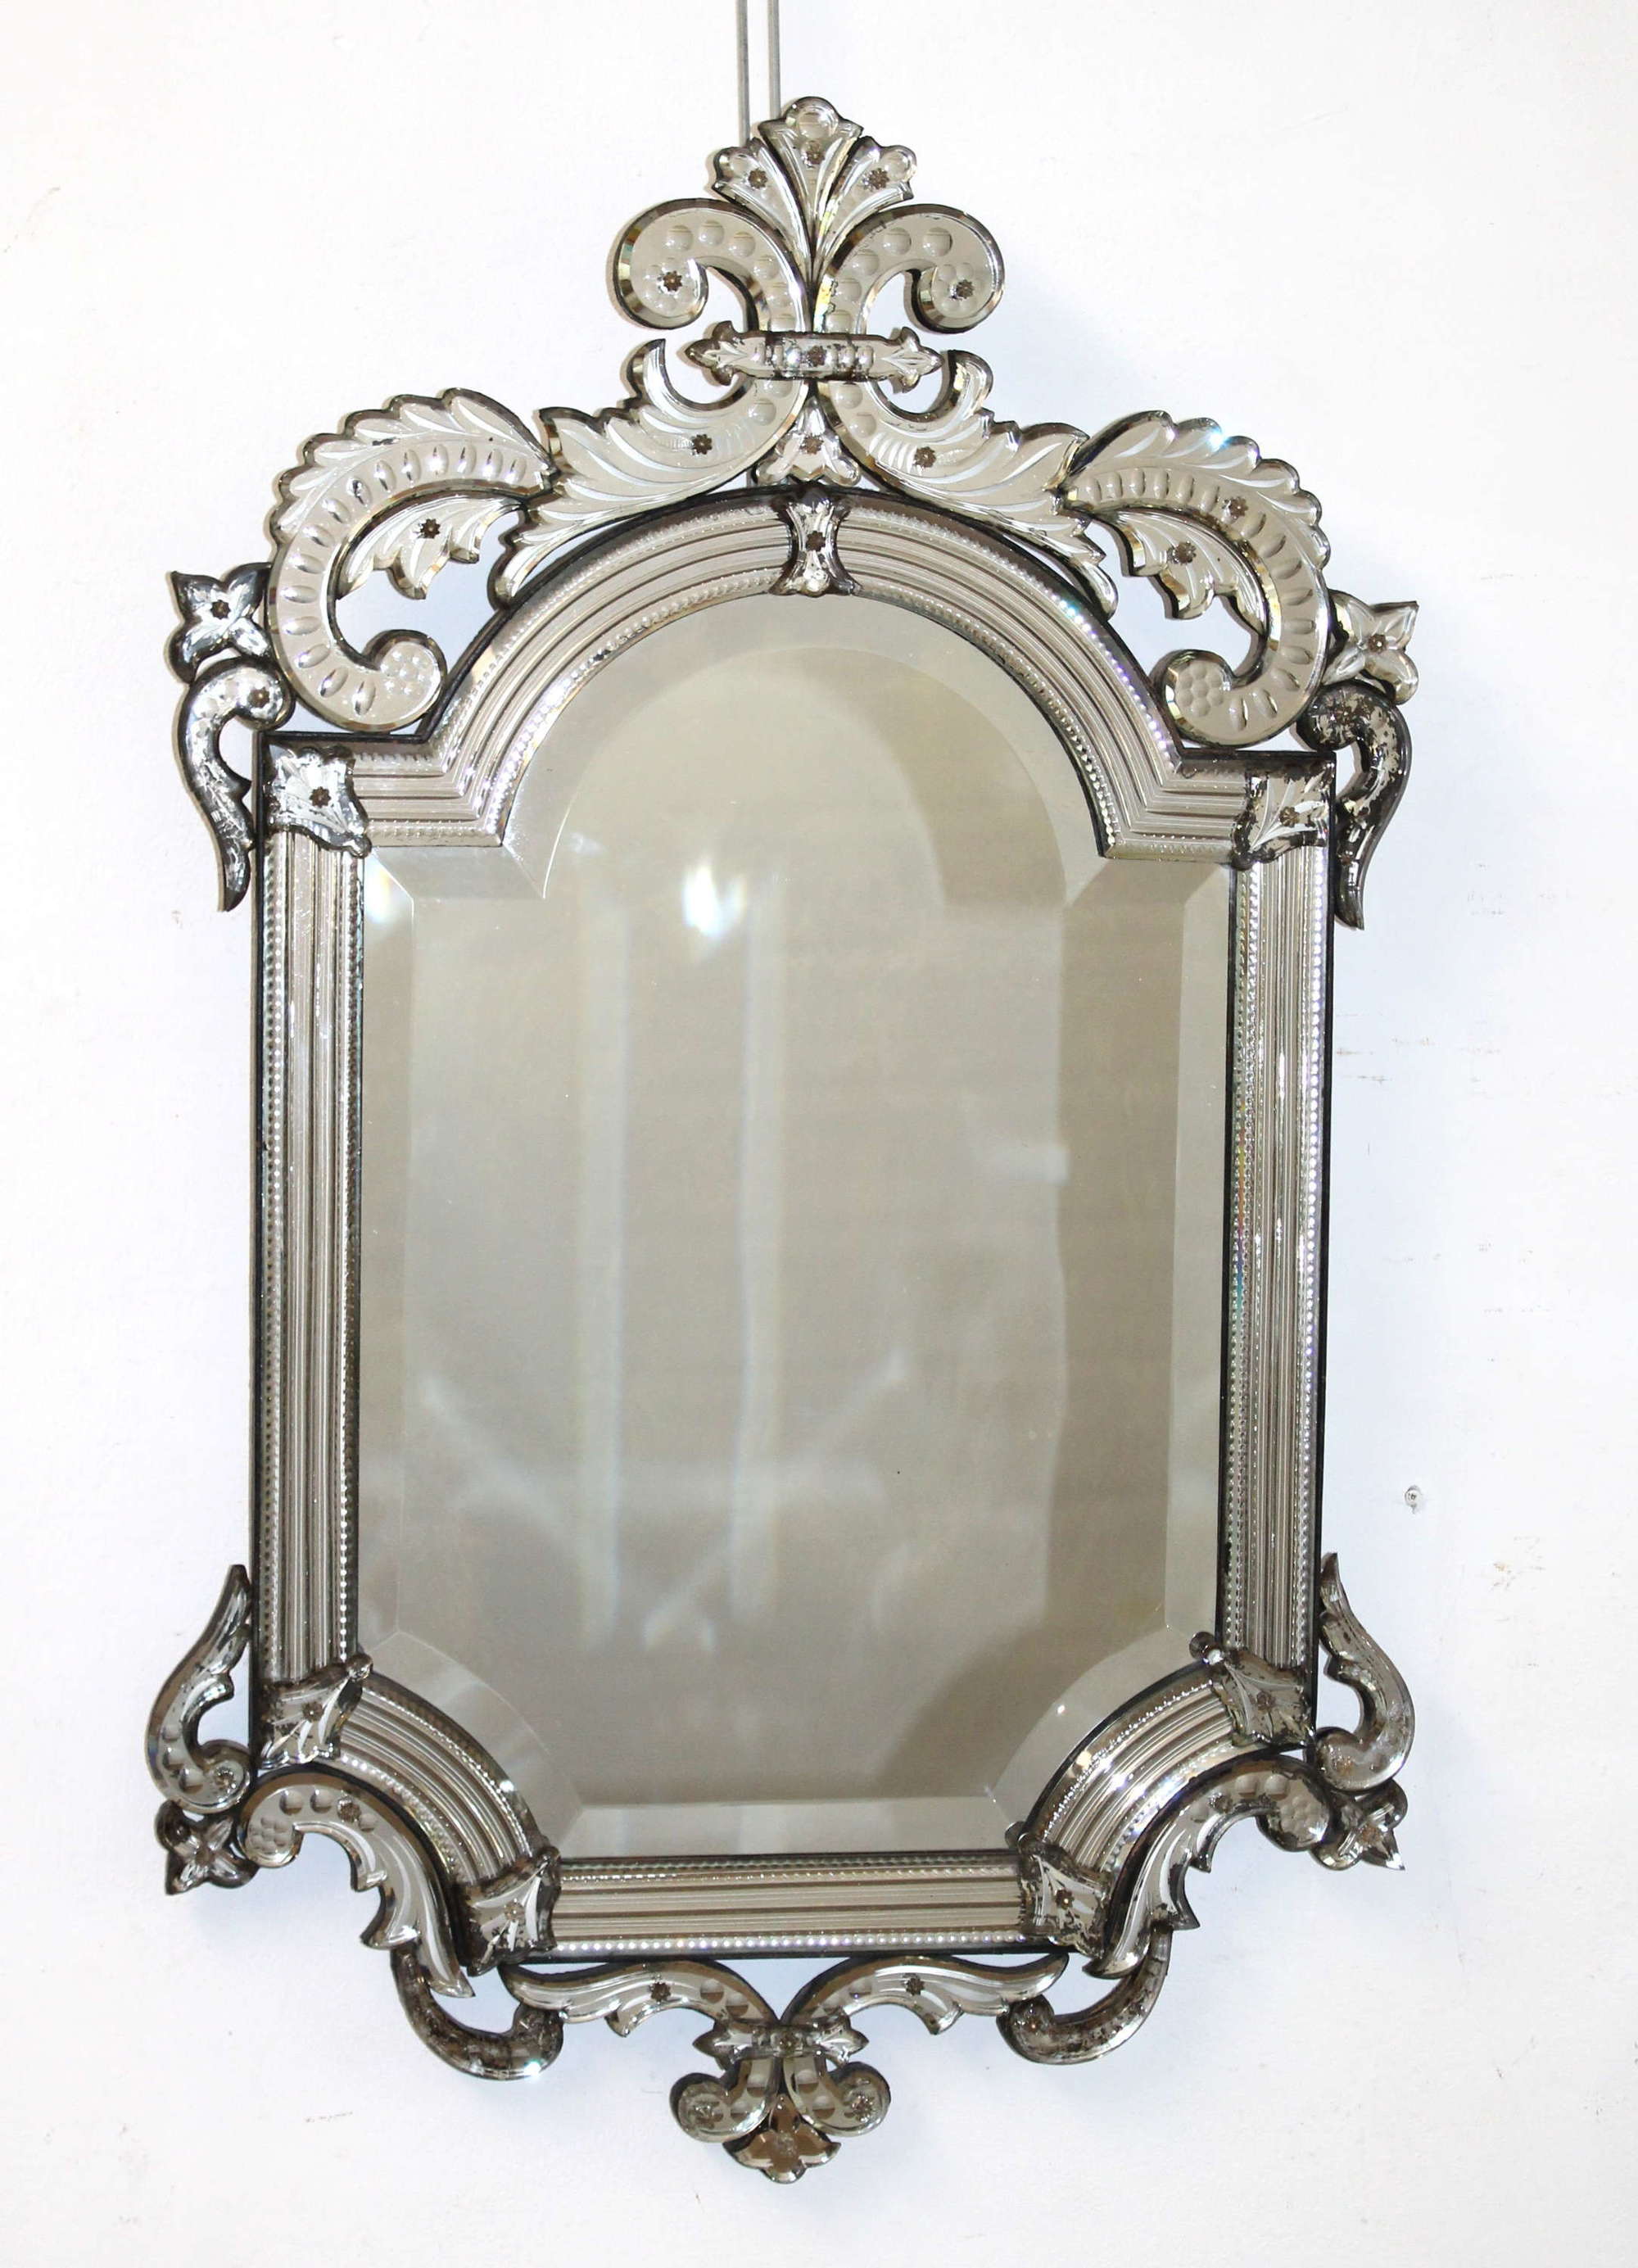 Decorative antique Venetian mirror